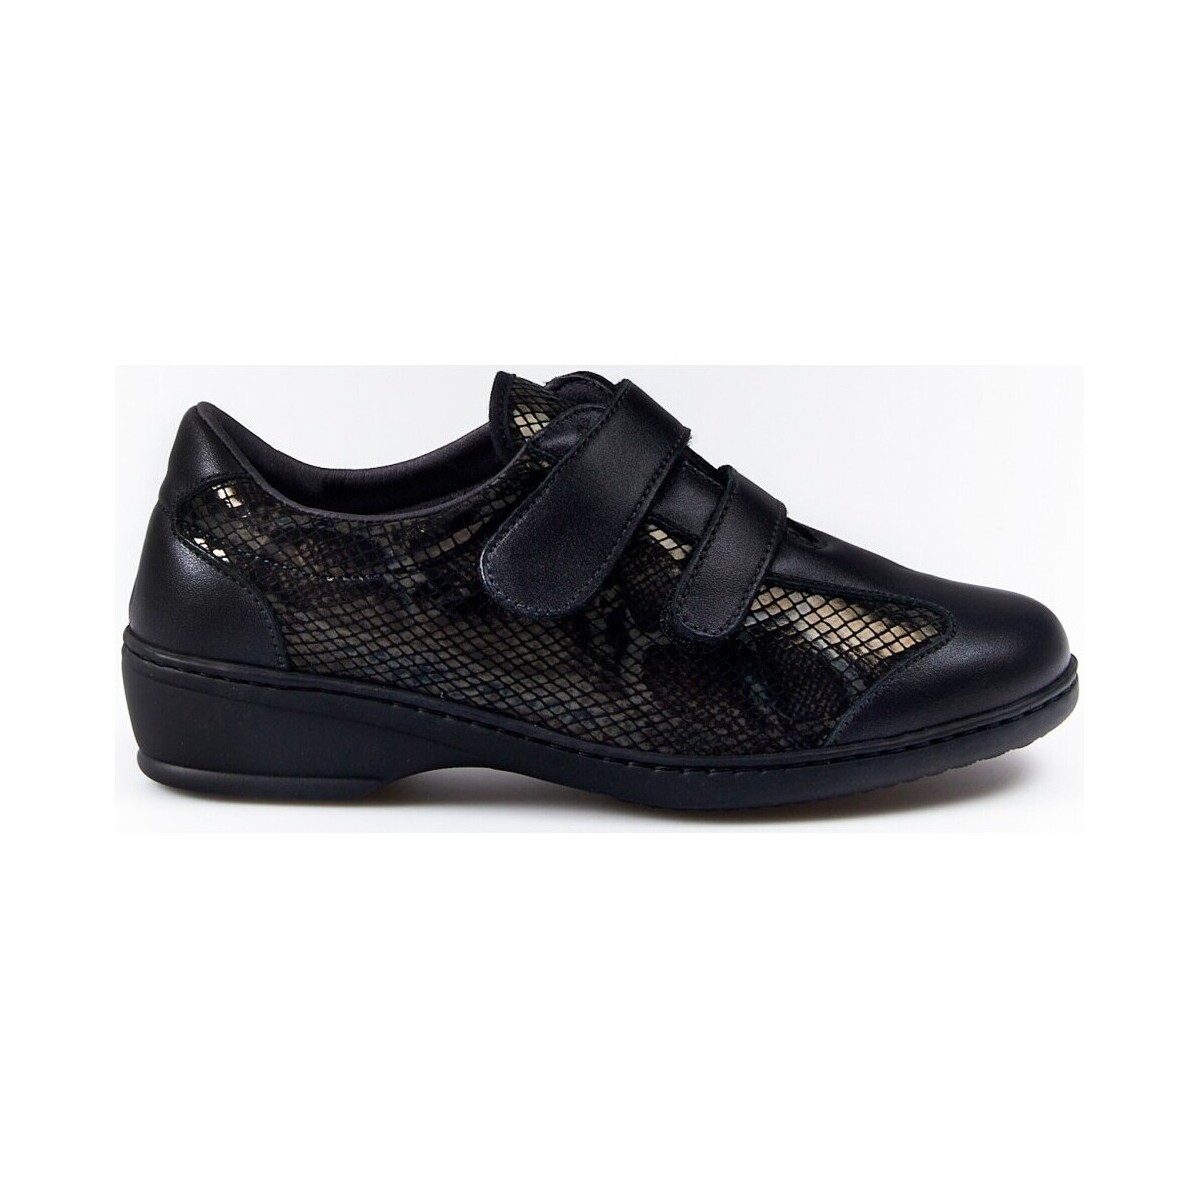 Sapatos Mulher Sapatos & Richelieu Notton Zapatos Deportivos  Ancho Especial 1161 Negro Velcros Preto